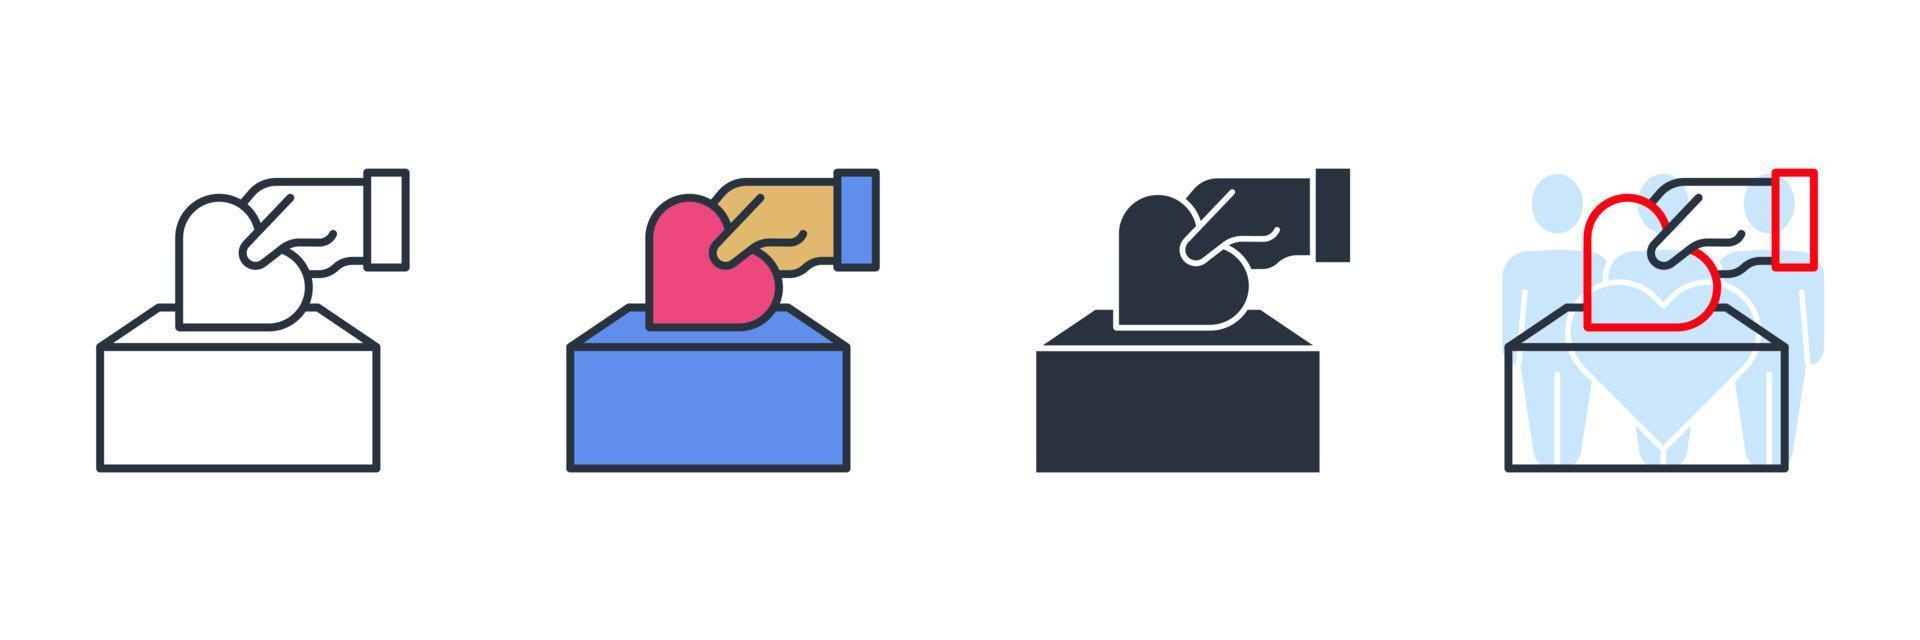 bijdrage icoon logo vector illustratie. hand- zetten haard of liefde in de doos symbool sjabloon voor grafisch en web ontwerp verzameling